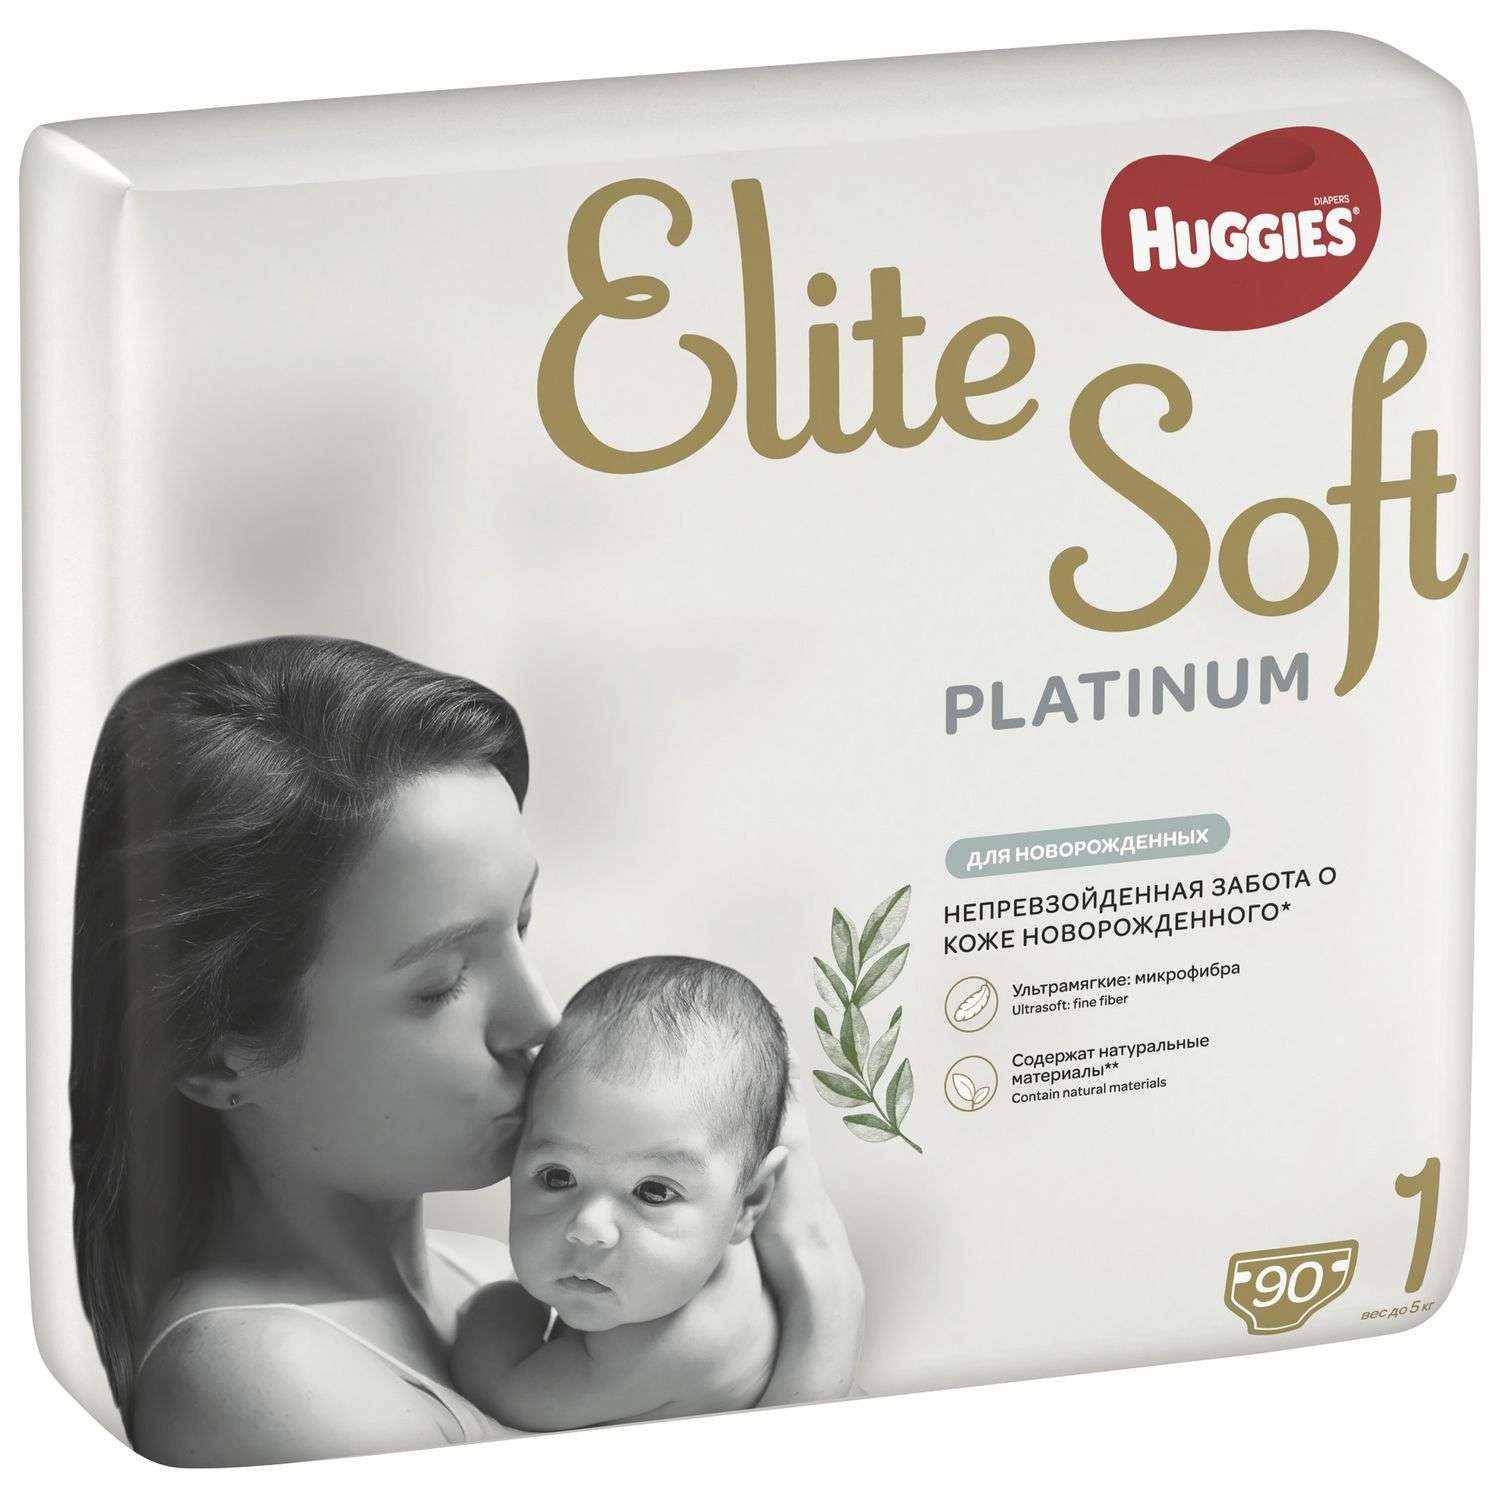 Подгузники Huggies Elite Soft Platinum для новорожденных 1 до 5кг 90шт - фото 2